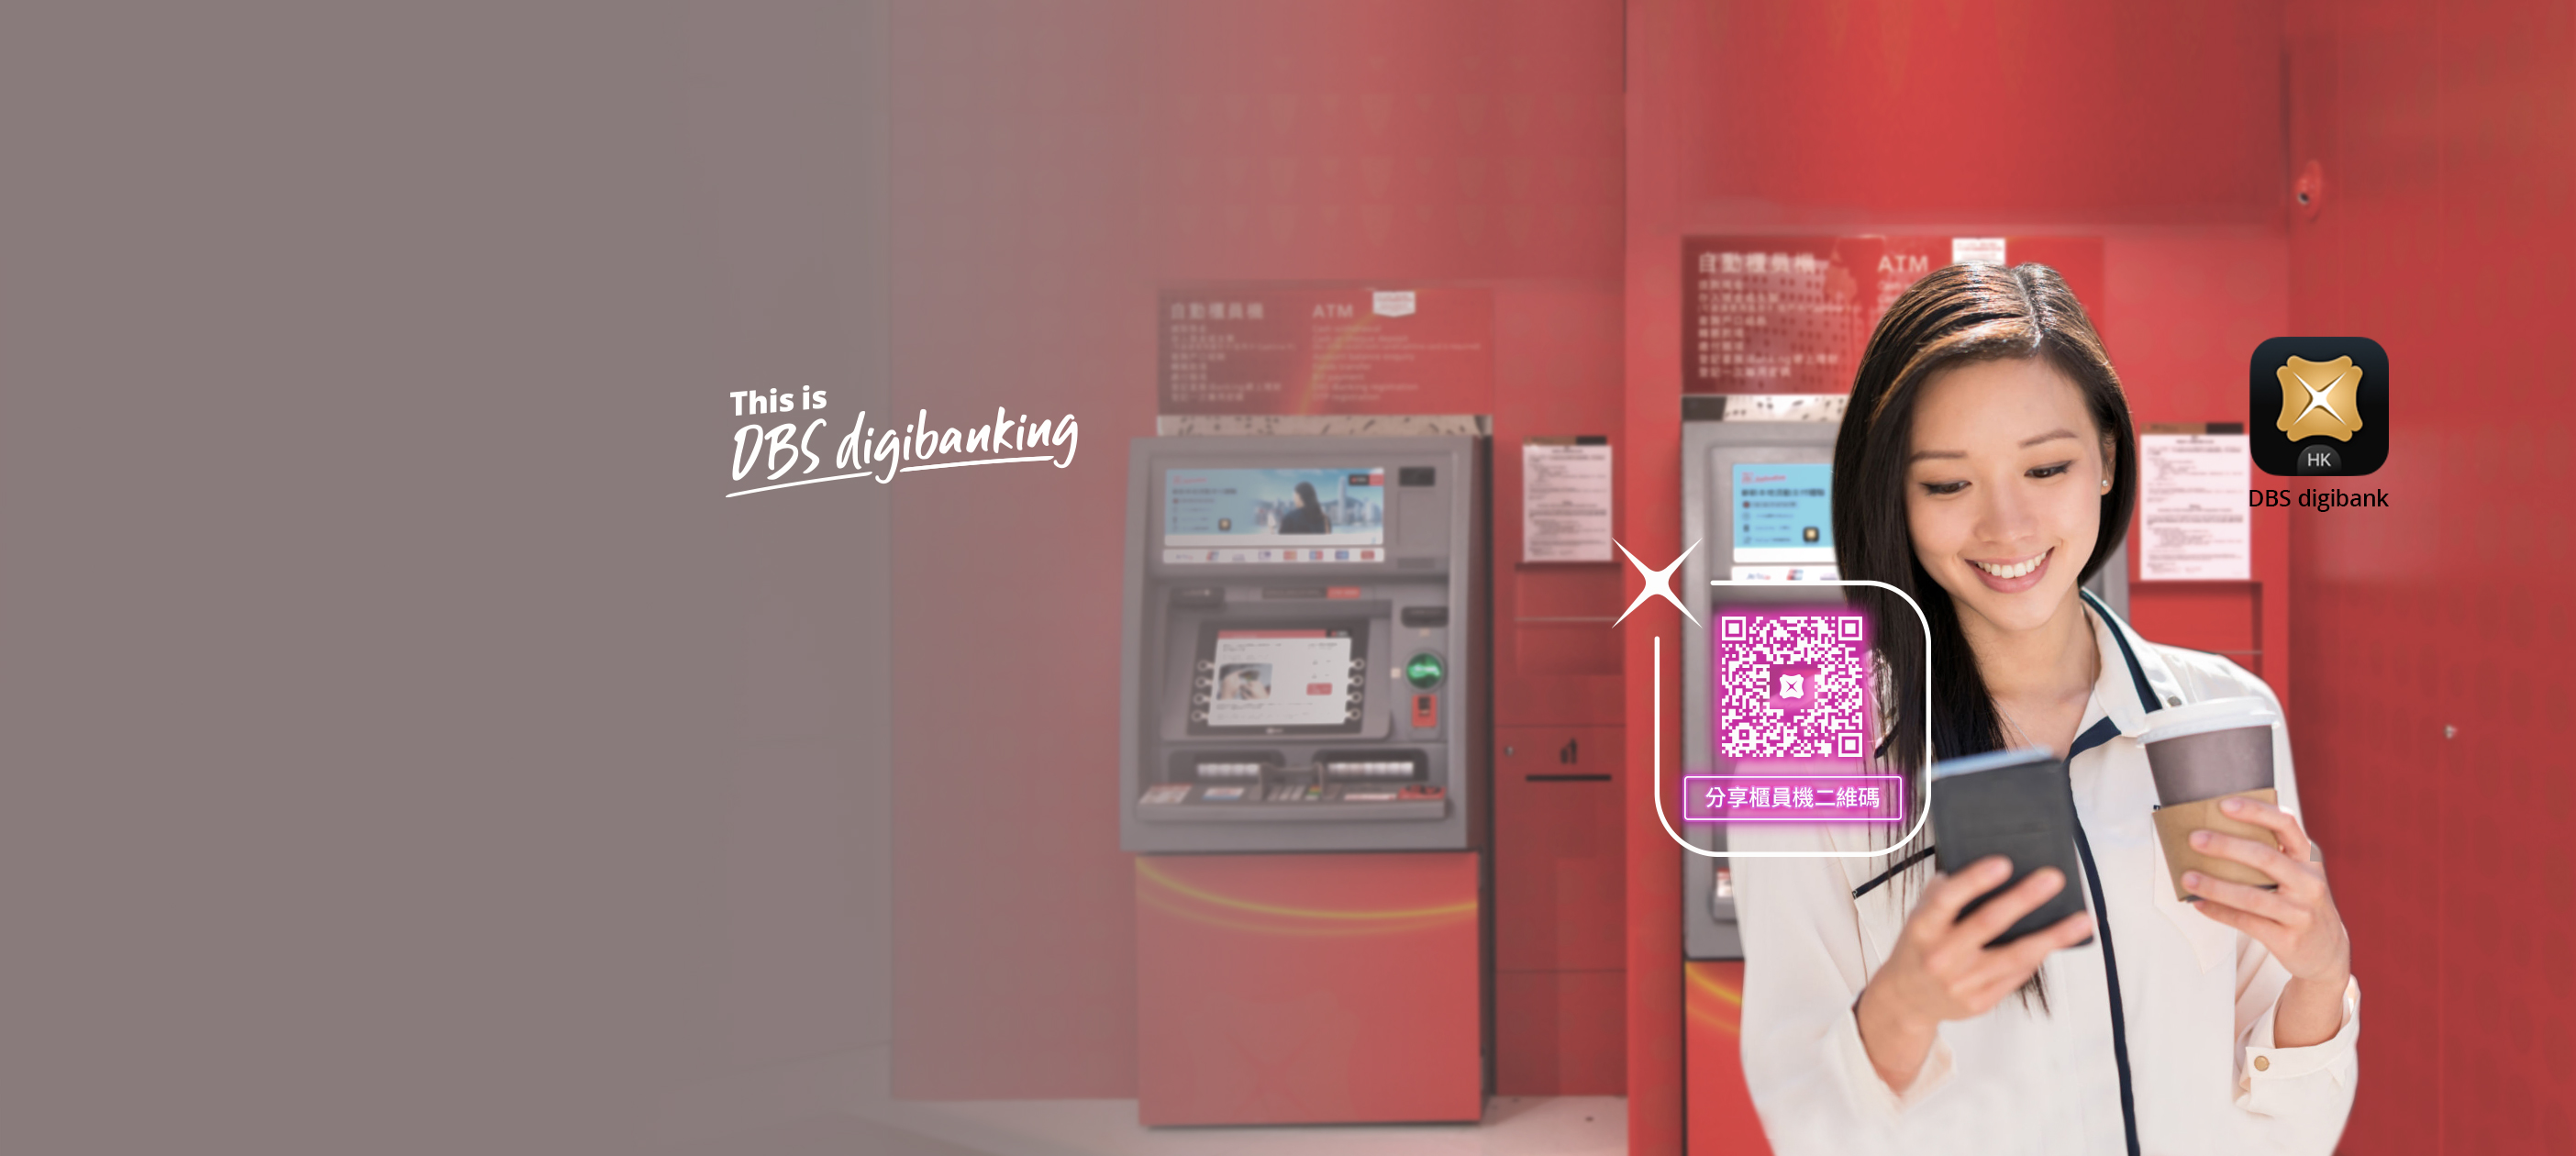 使用升級版星展自動櫃員機, 享受無卡且安心的現金及支票交易